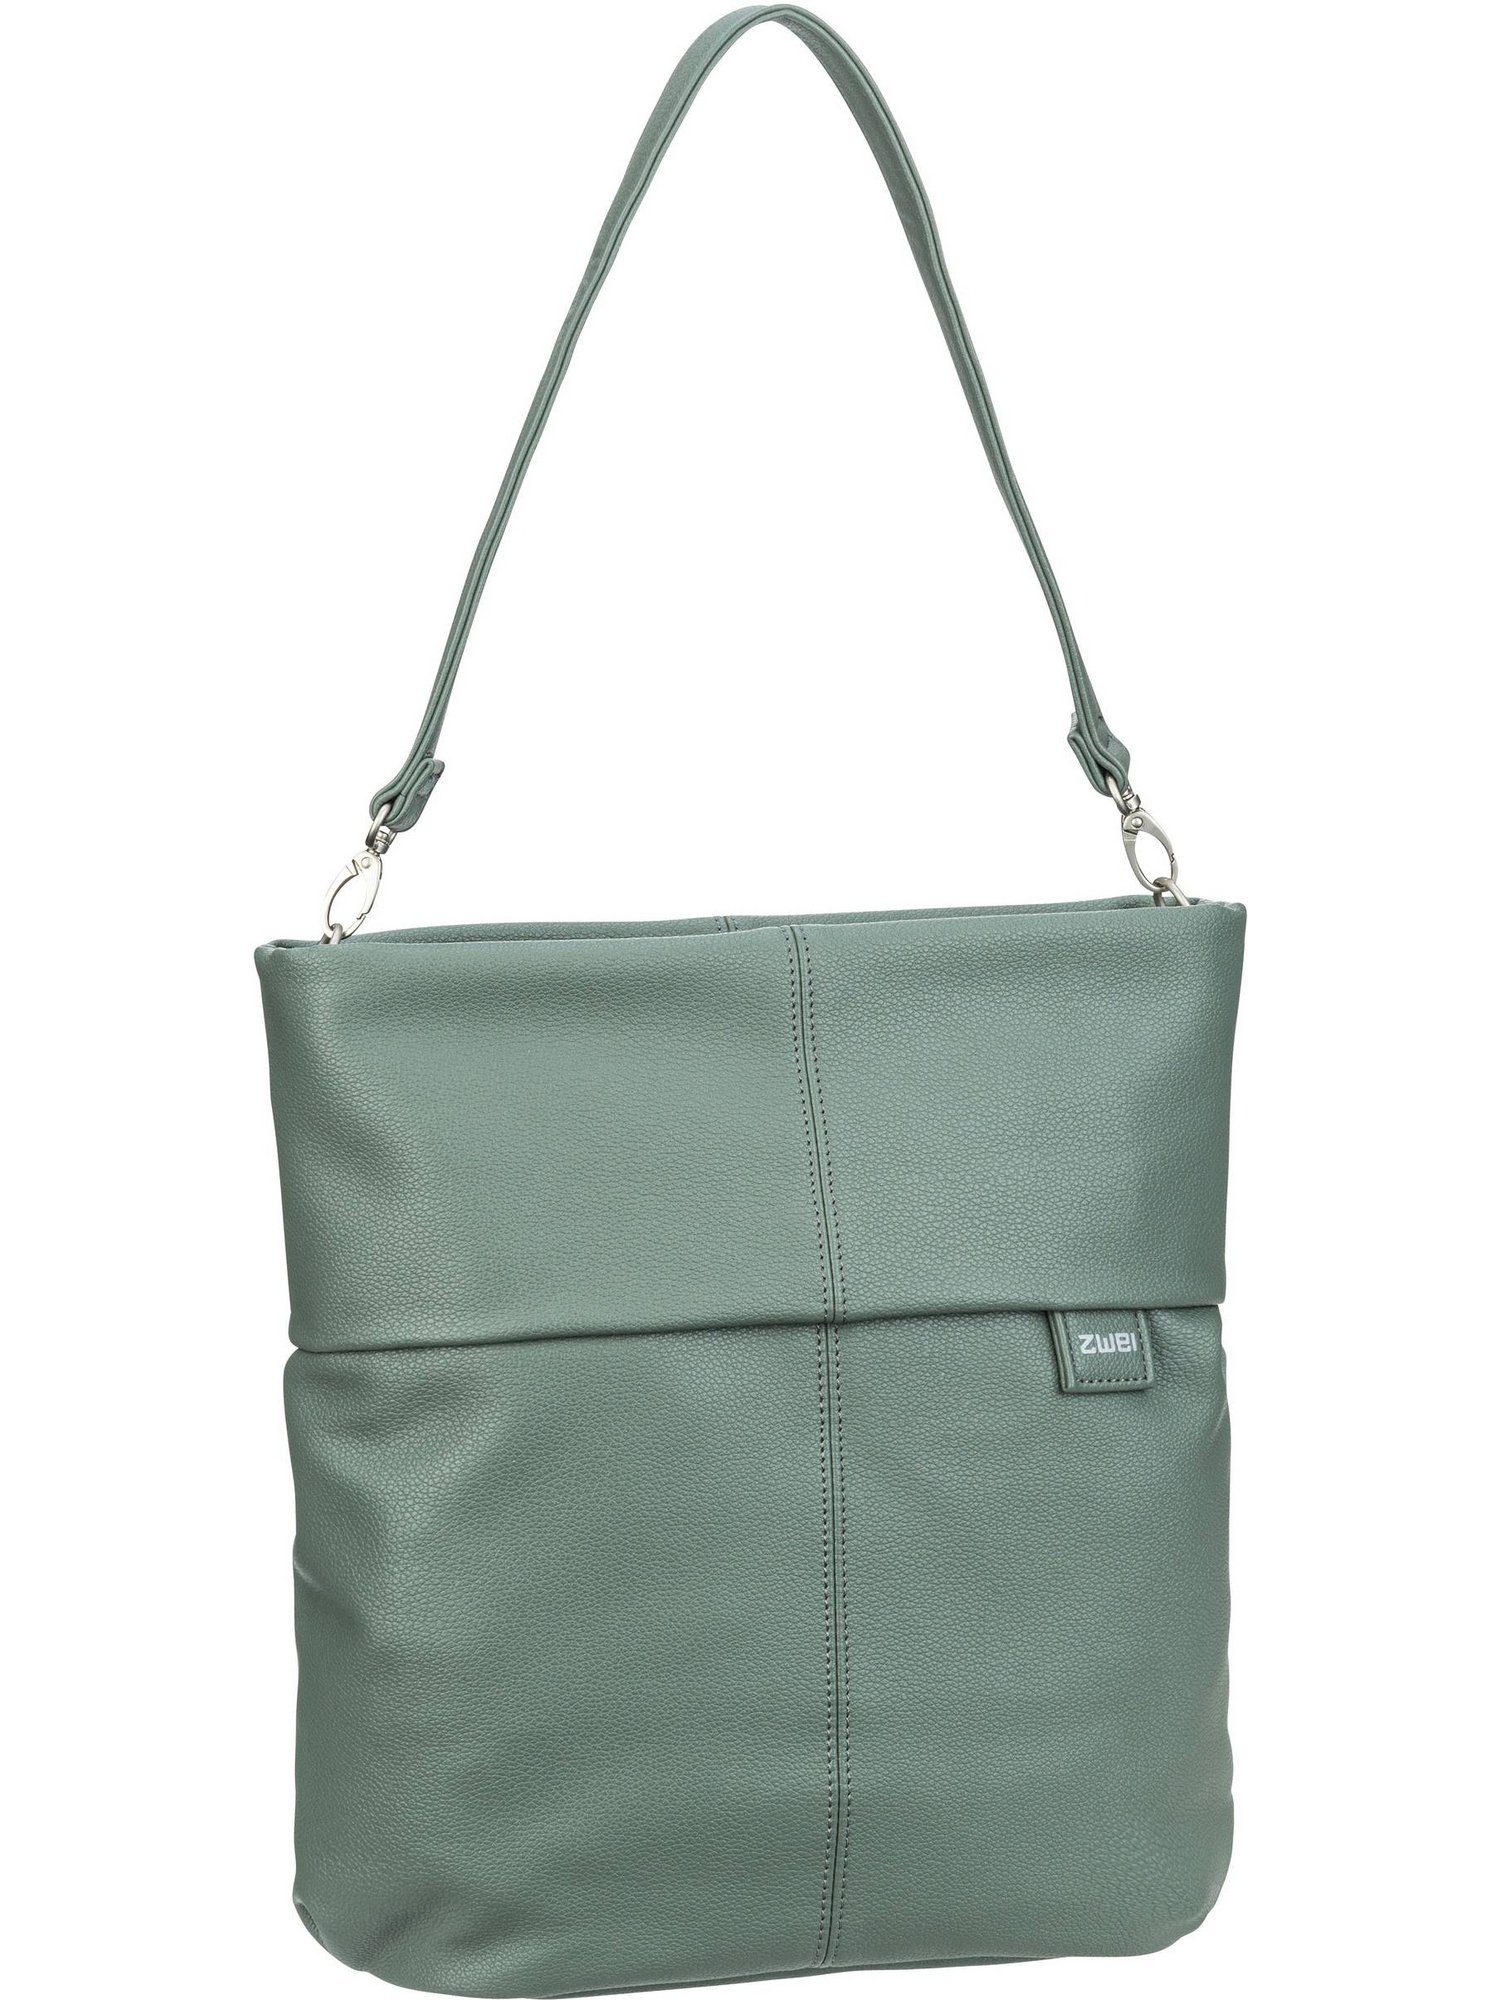 M12, Hobo Mademoiselle Zwei Handtasche Bag Eucalyptus